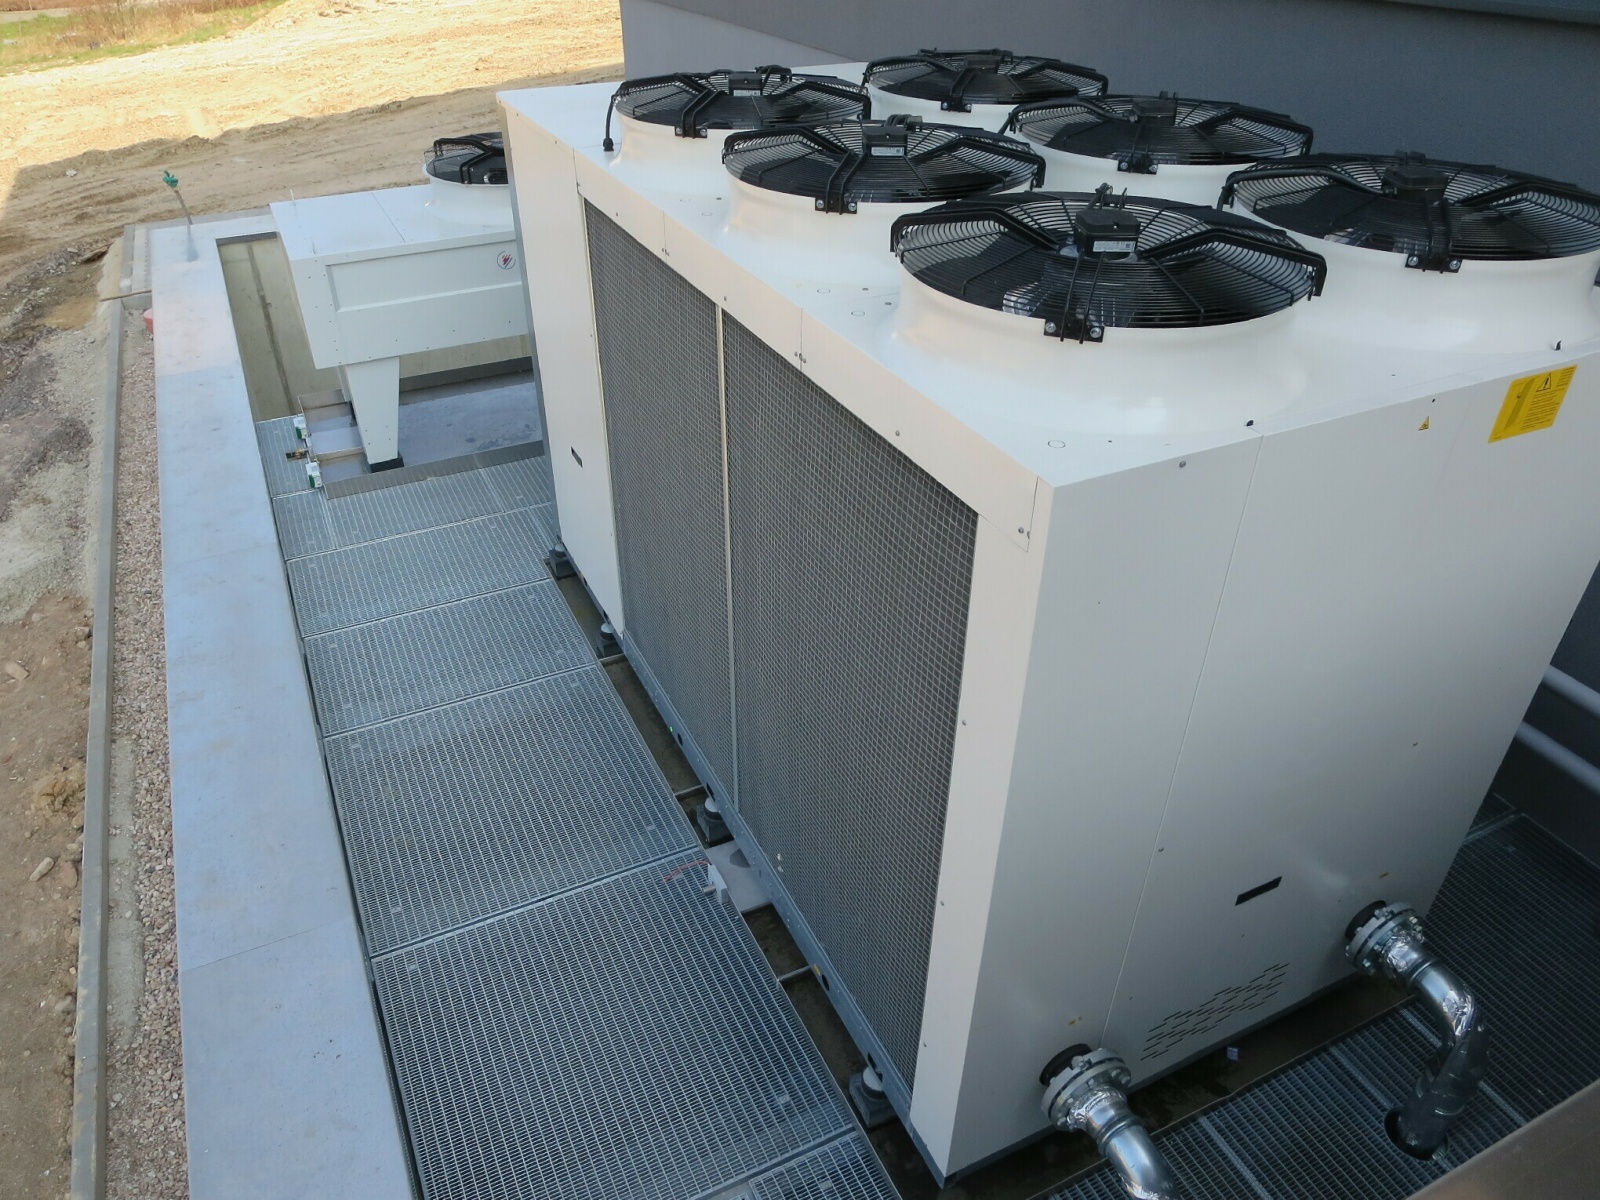 Produktionsstätte LCP, reversible Wärmepumpe zur Wärme- oder Kälteenutzung (Front) + Rückkühler zur Wärmeabfuhr und Freikühlung (Hinterseite); aufgestellt auf Gitterrost über dem Fortluftkanalauslass, Bild: Tom Lattermann